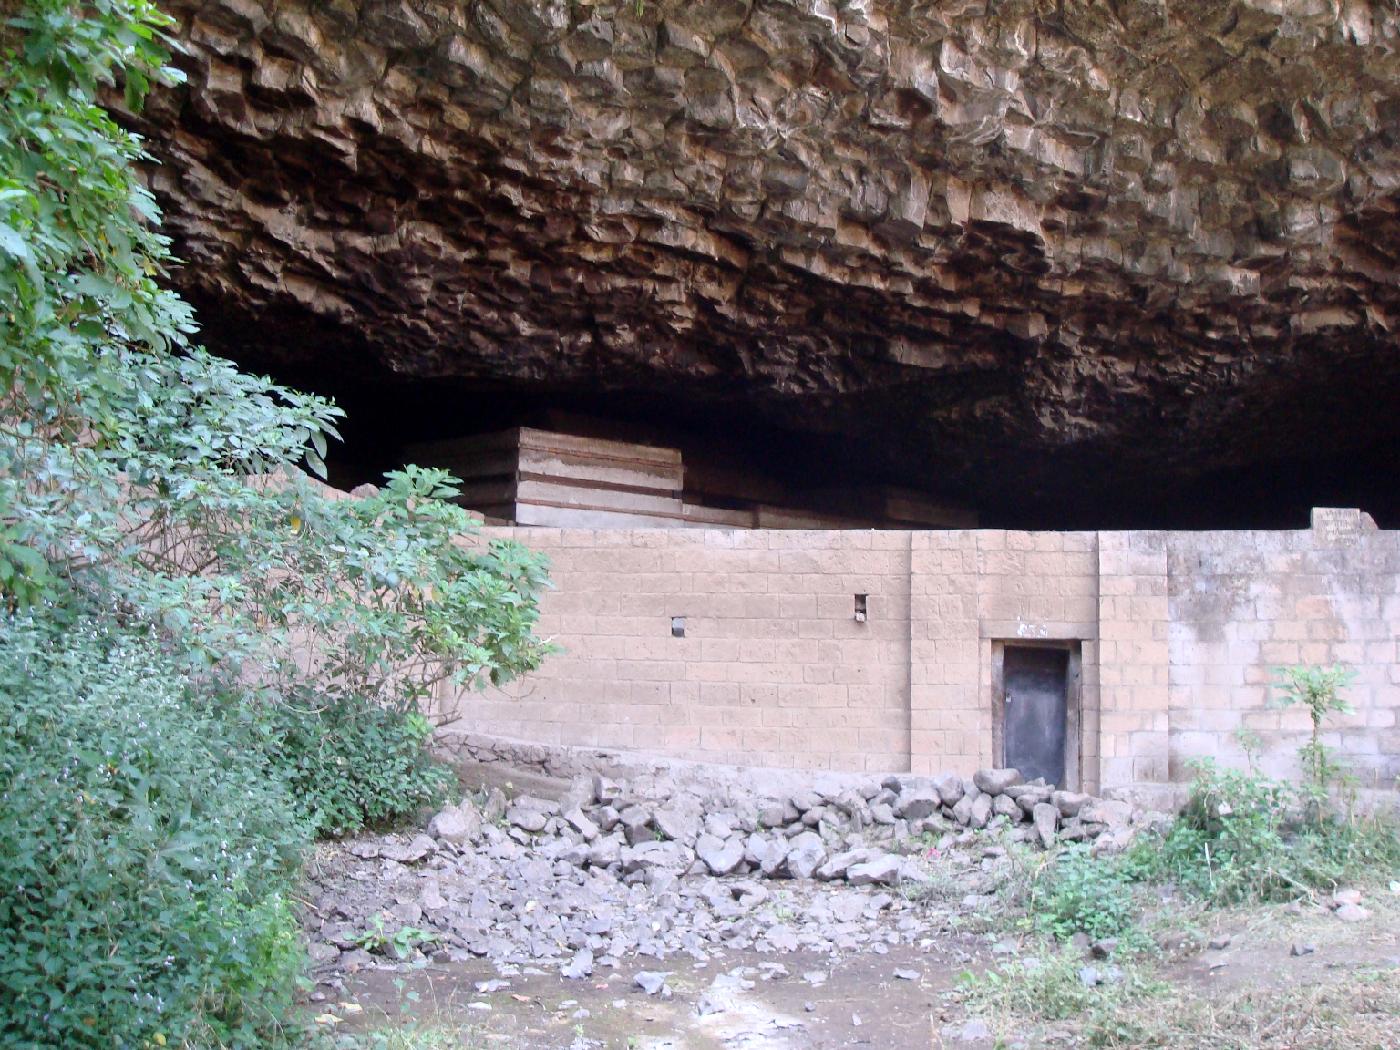 DSC035445.jpg - Lglise de Yemrehanna Krestos est construite dans une grotte des monts de lAbuna Josef